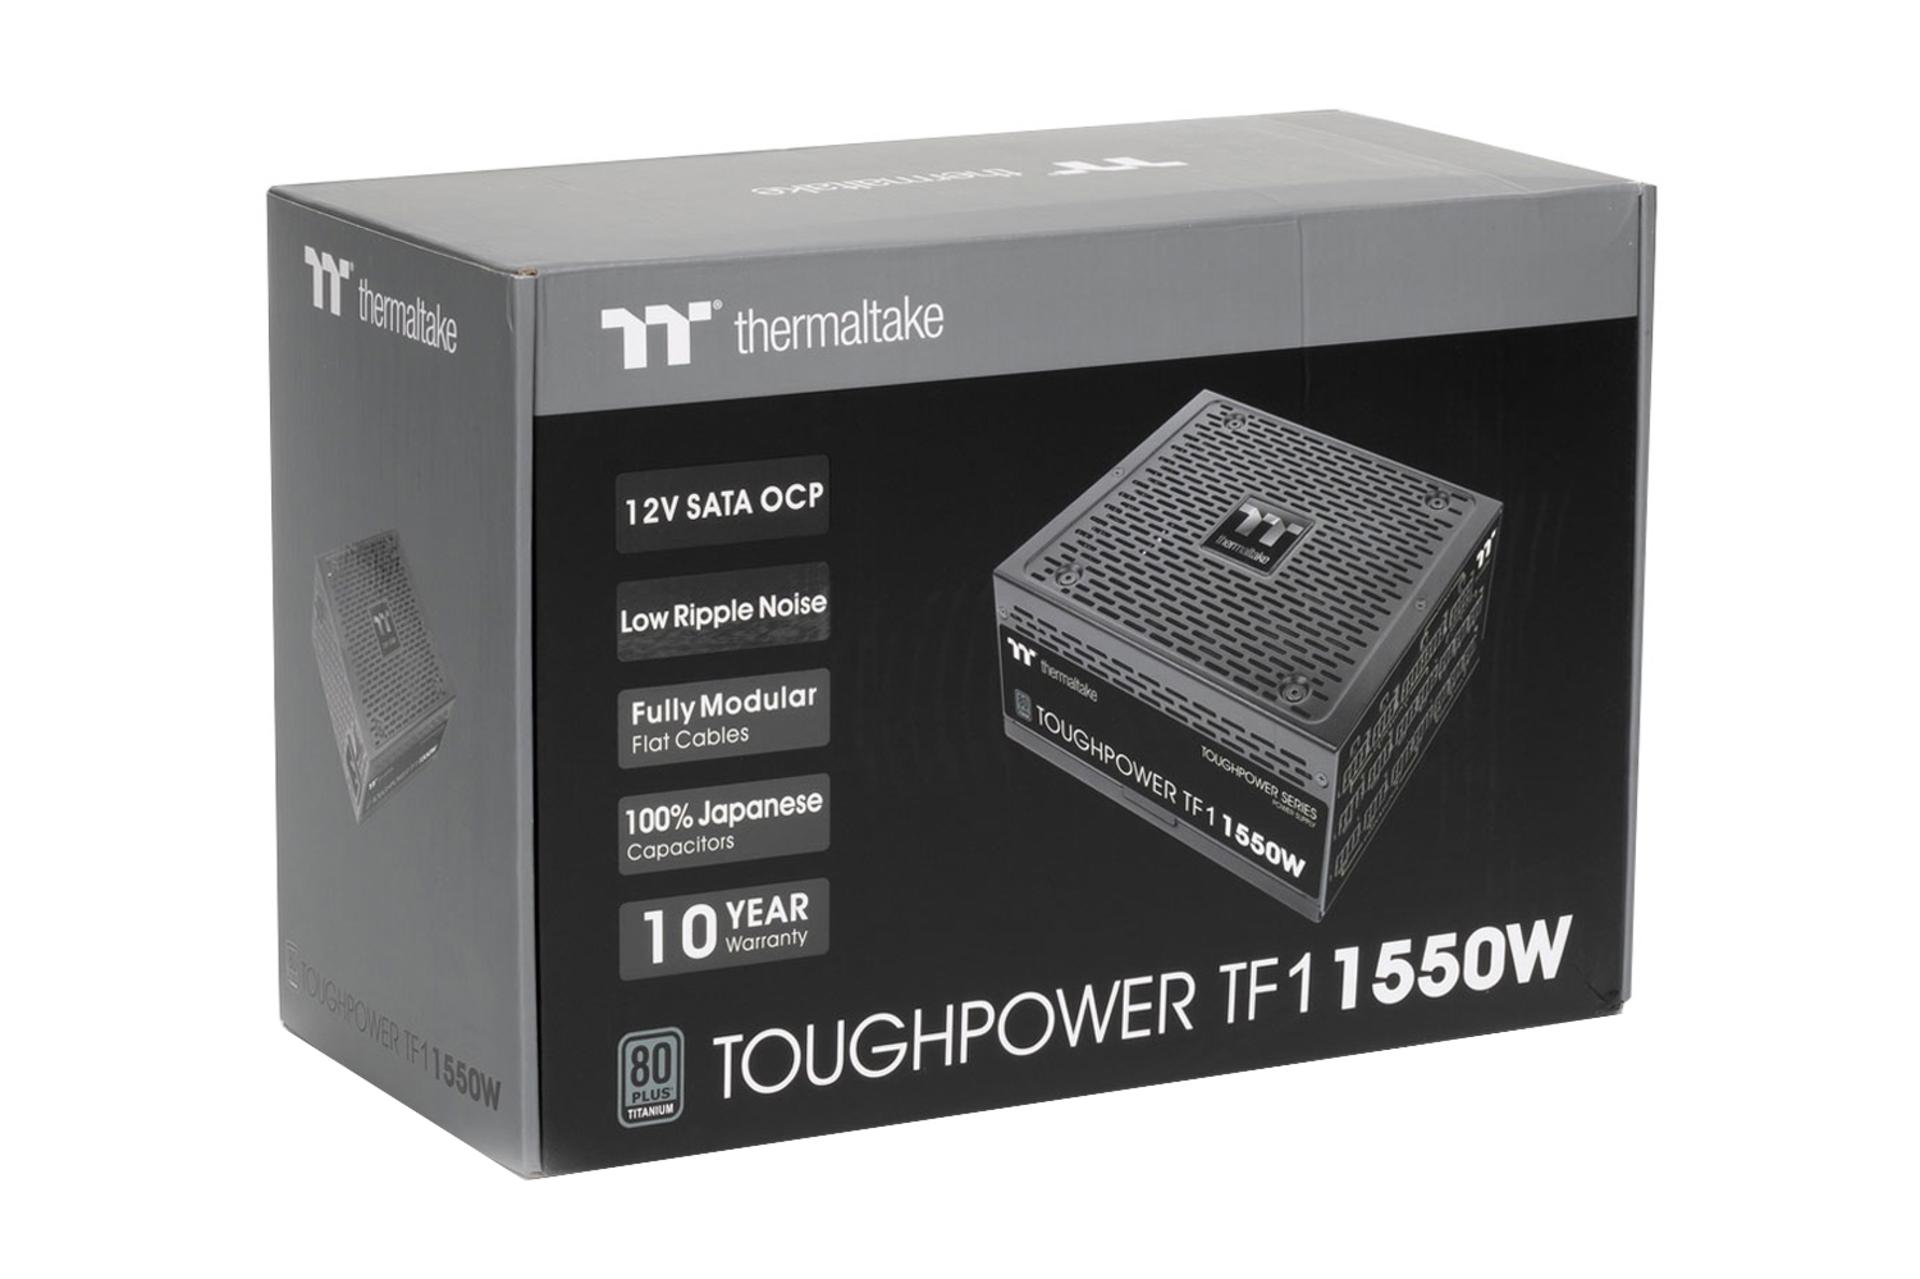 جعبه پاور کامپیوتر ترمالتیک Toughpower TF1 1550W - TT Premium Edition با توان 1550 وات